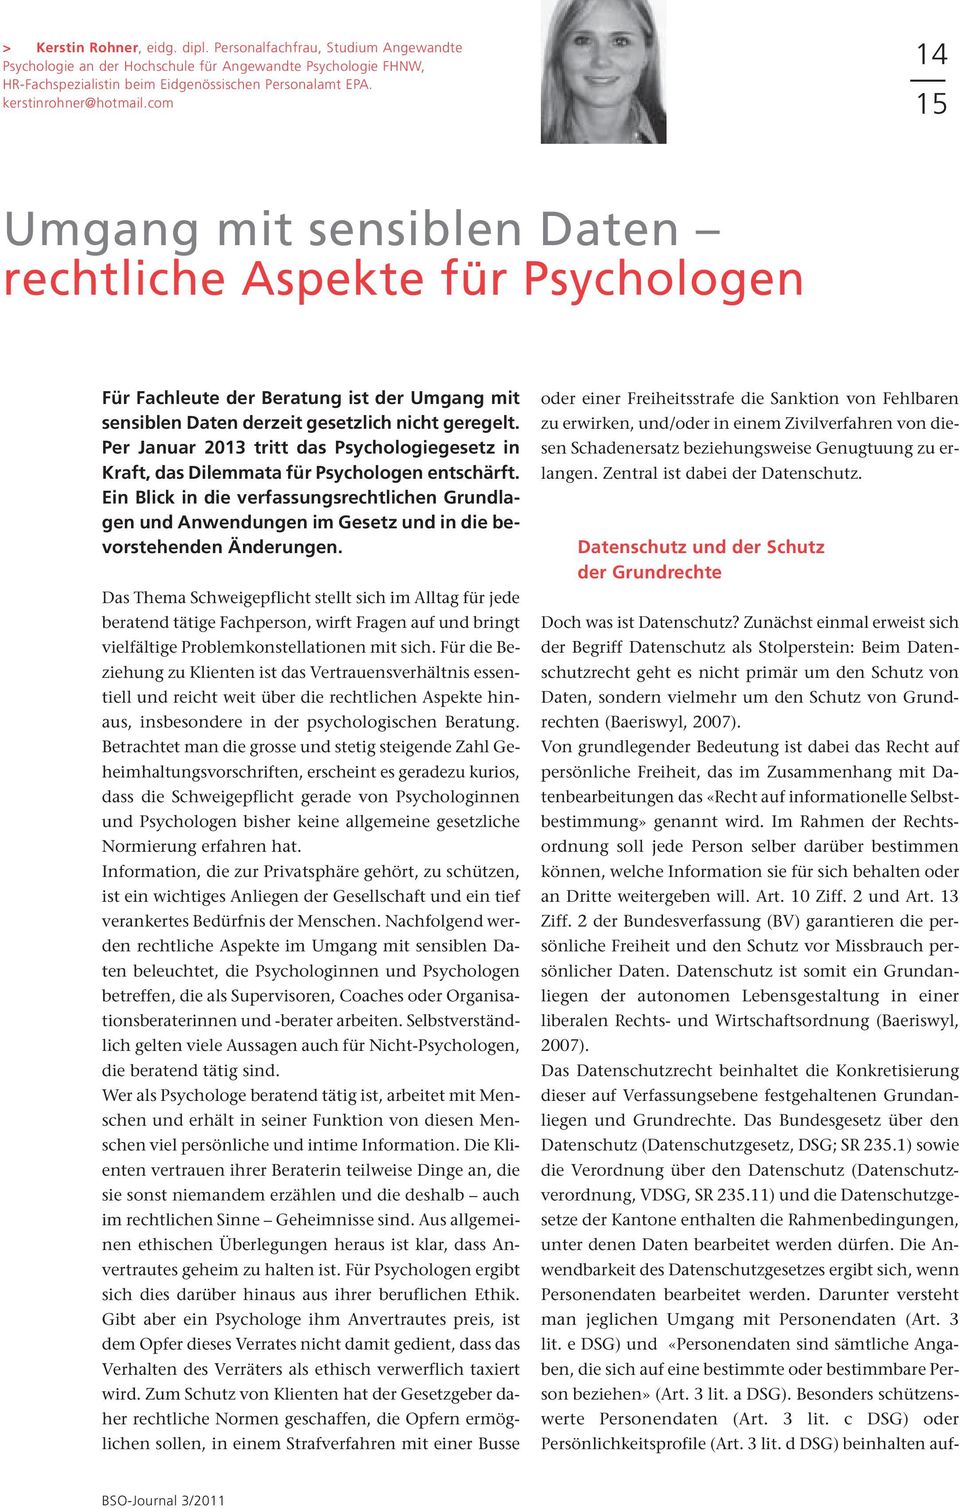 Per Januar 2013 tritt das Psychologiegesetz in Kraft, das Dilemmata für Psychologen entschärft.